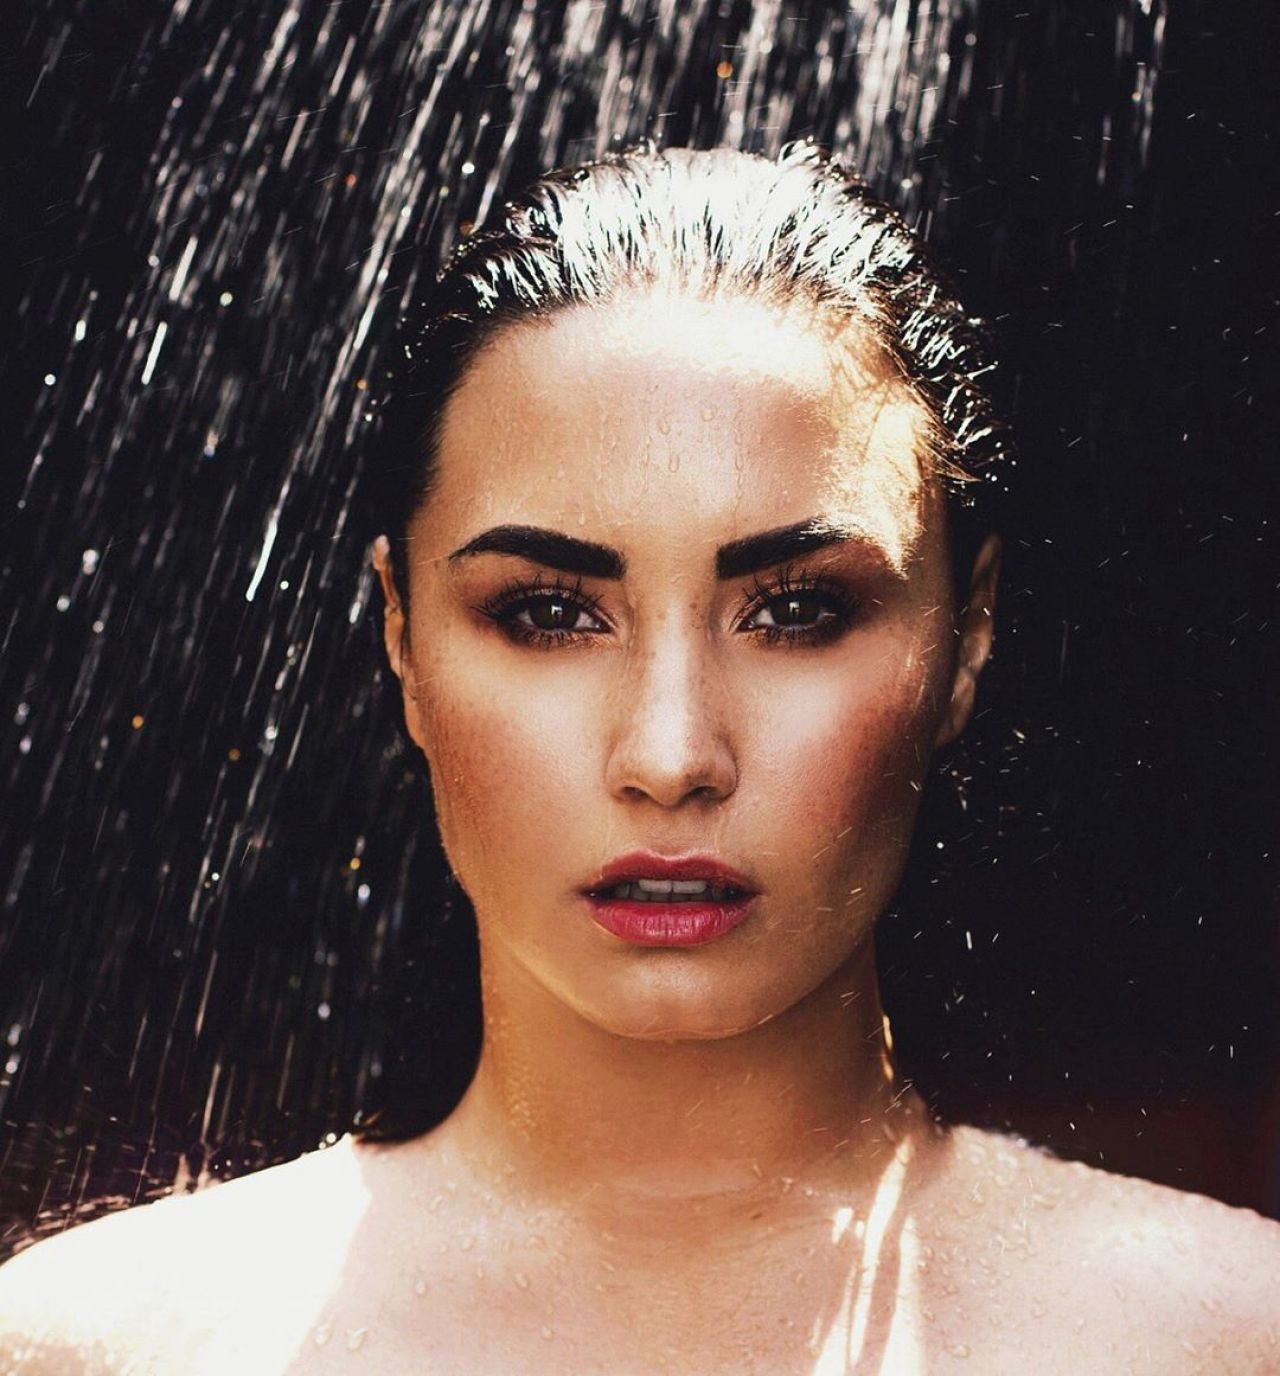 Demi Lovato - Personal Pics 01/15/20191280 x 1376